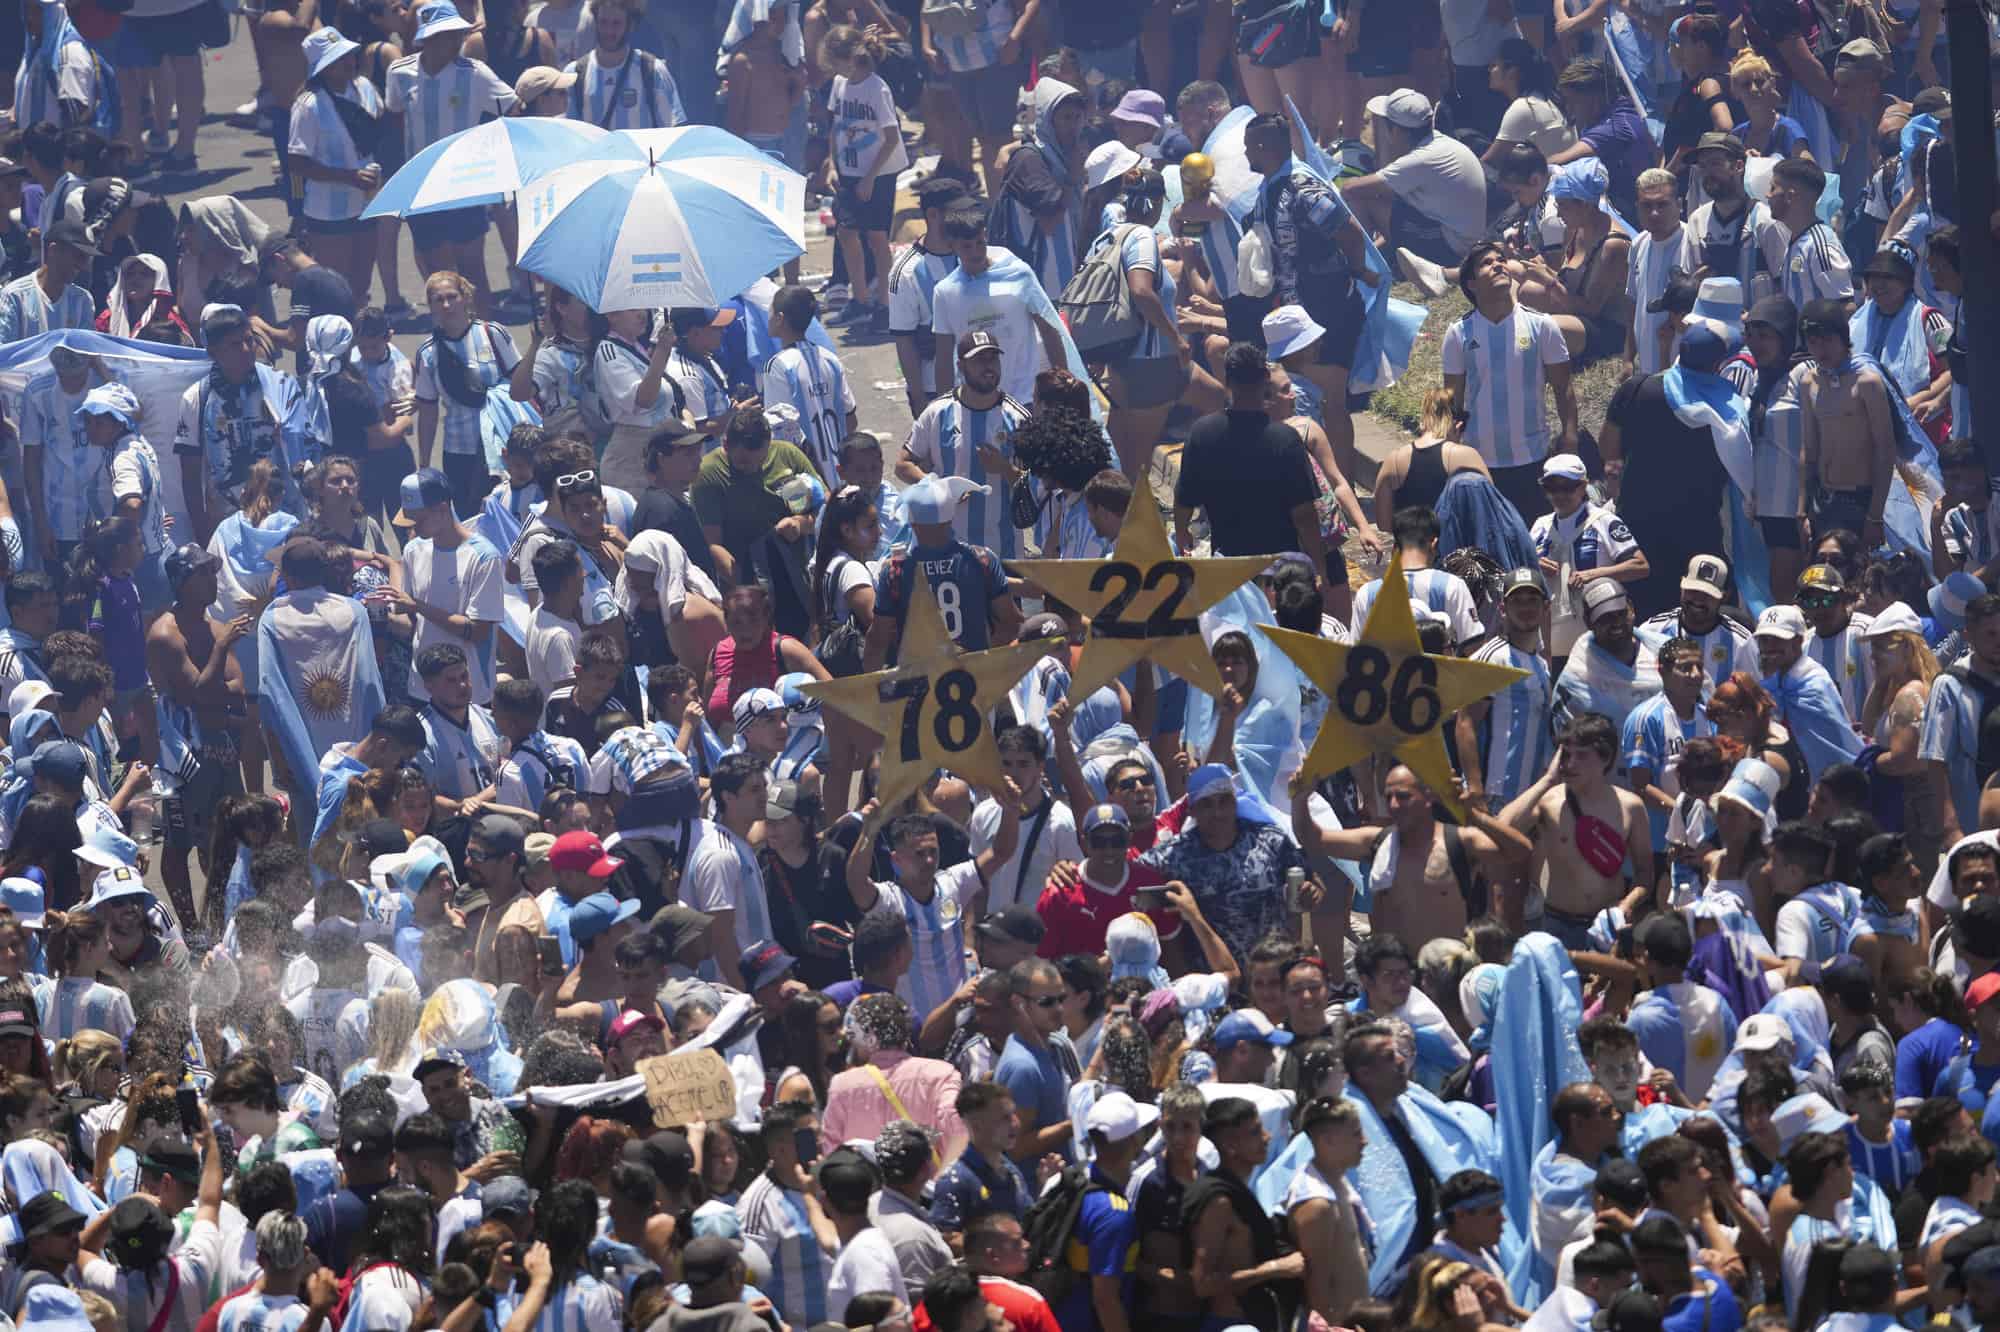 Aficionados al fútbol argentino con carteles con los años en que su equipo ganó los torneos anteriores de la Copa del Mundo se reúnen en el monumento del Obelisco para un desfile de bienvenida después de que el equipo ganó otro título de la Copa del Mundo en Buenos Aires, Argentina, el martes 1 de diciembre de 2019. 20 de febrero de 2022.